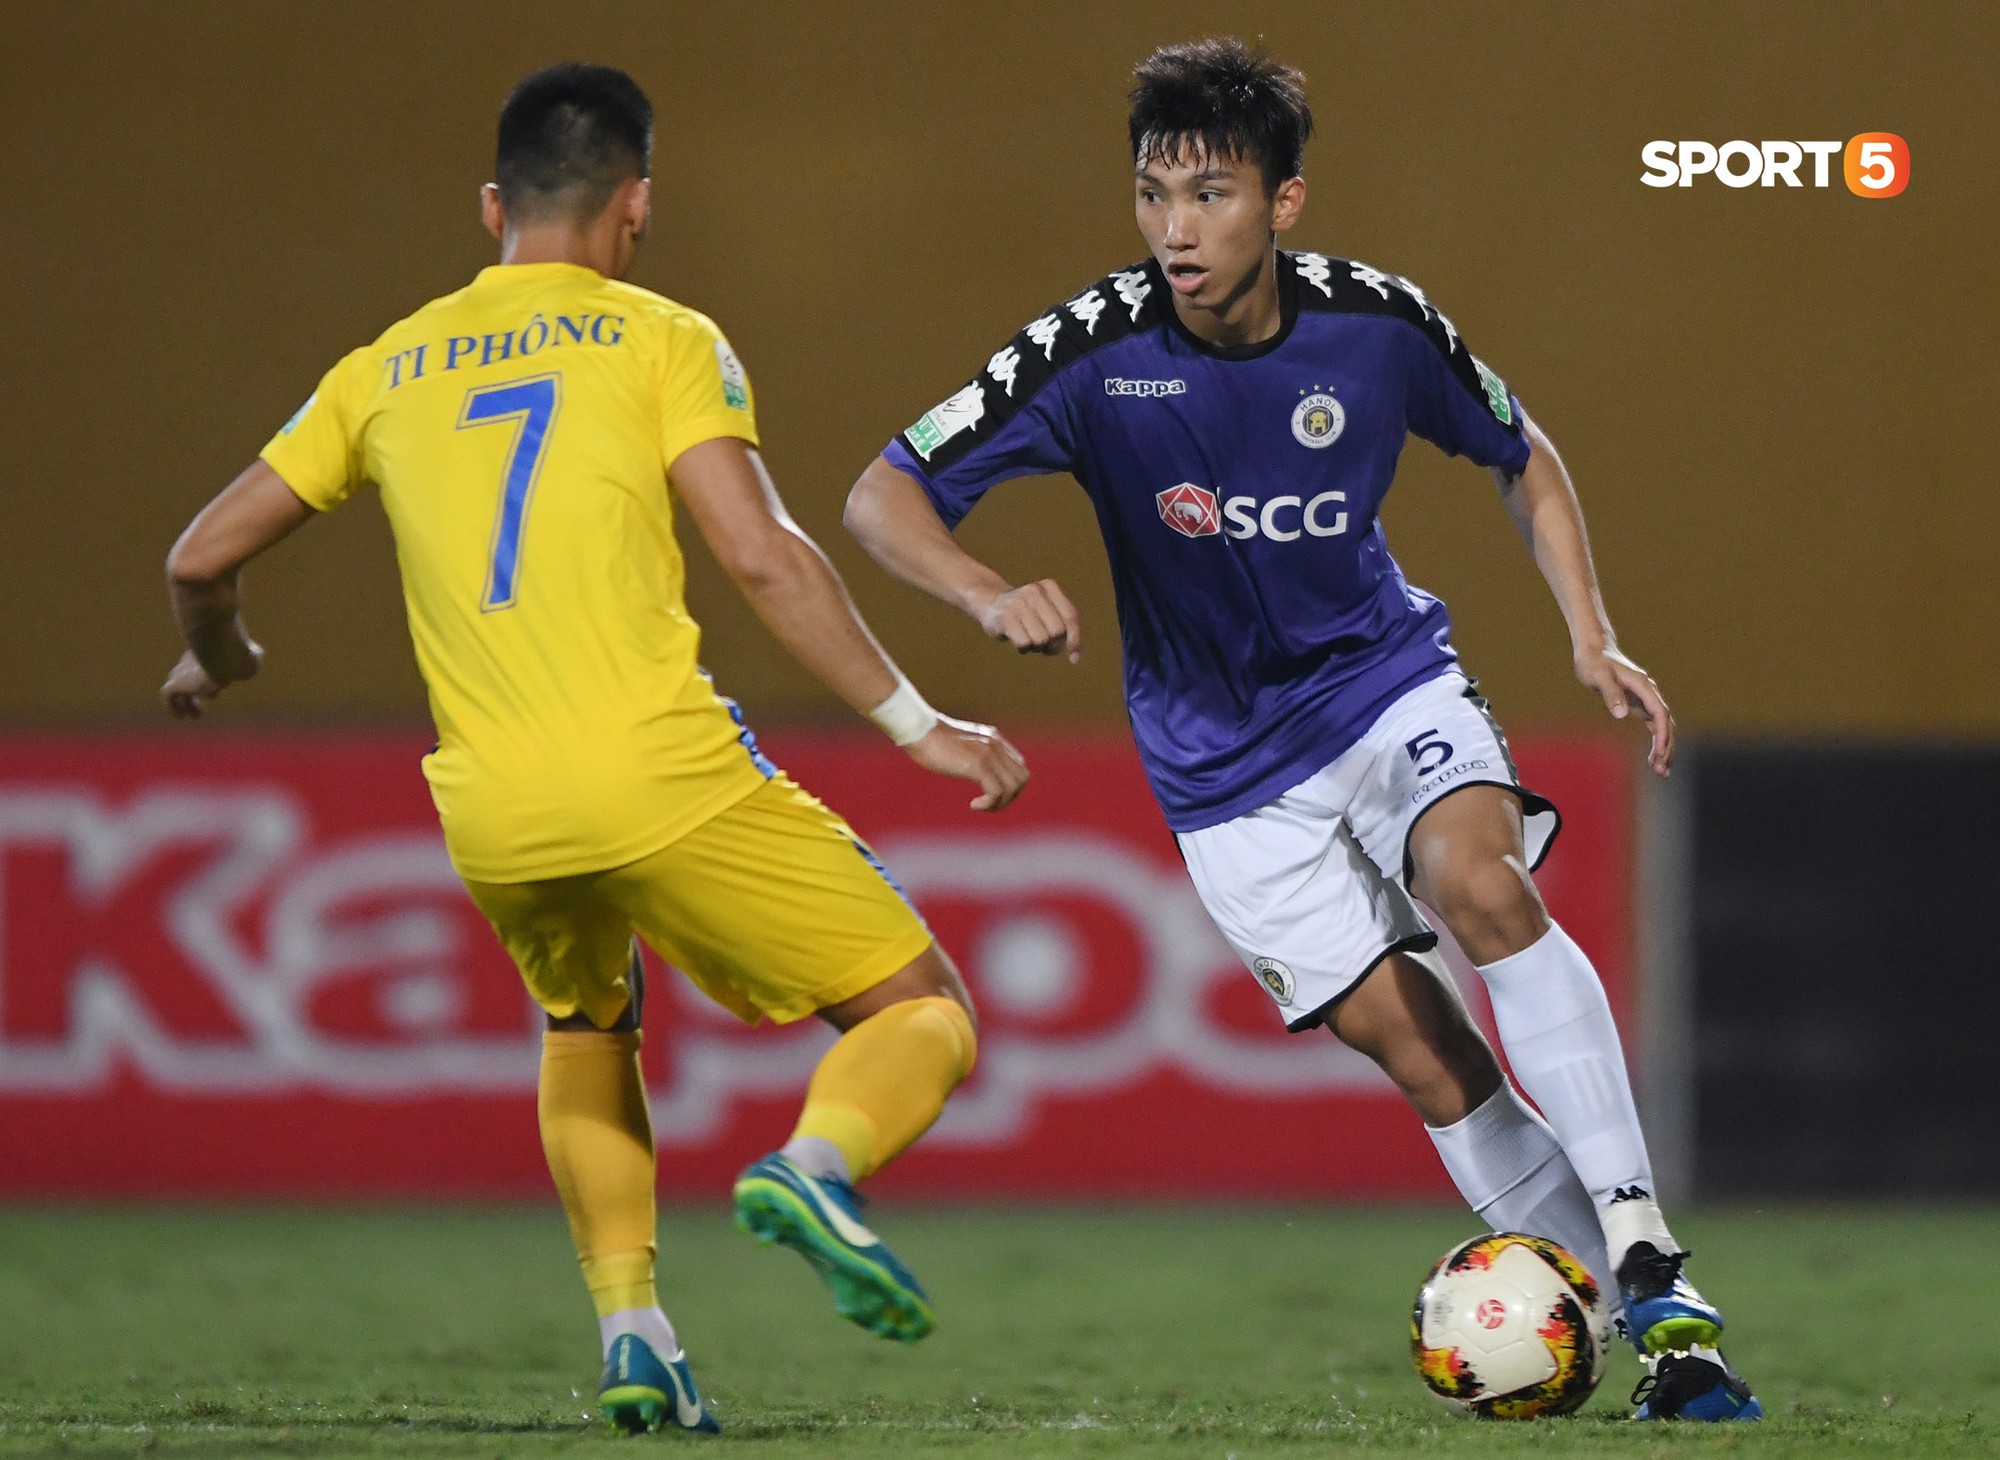 Lâm Ti Phông khen cầu thủ U23 tiến bộ nhanh sau giải châu Á - Ảnh 2.